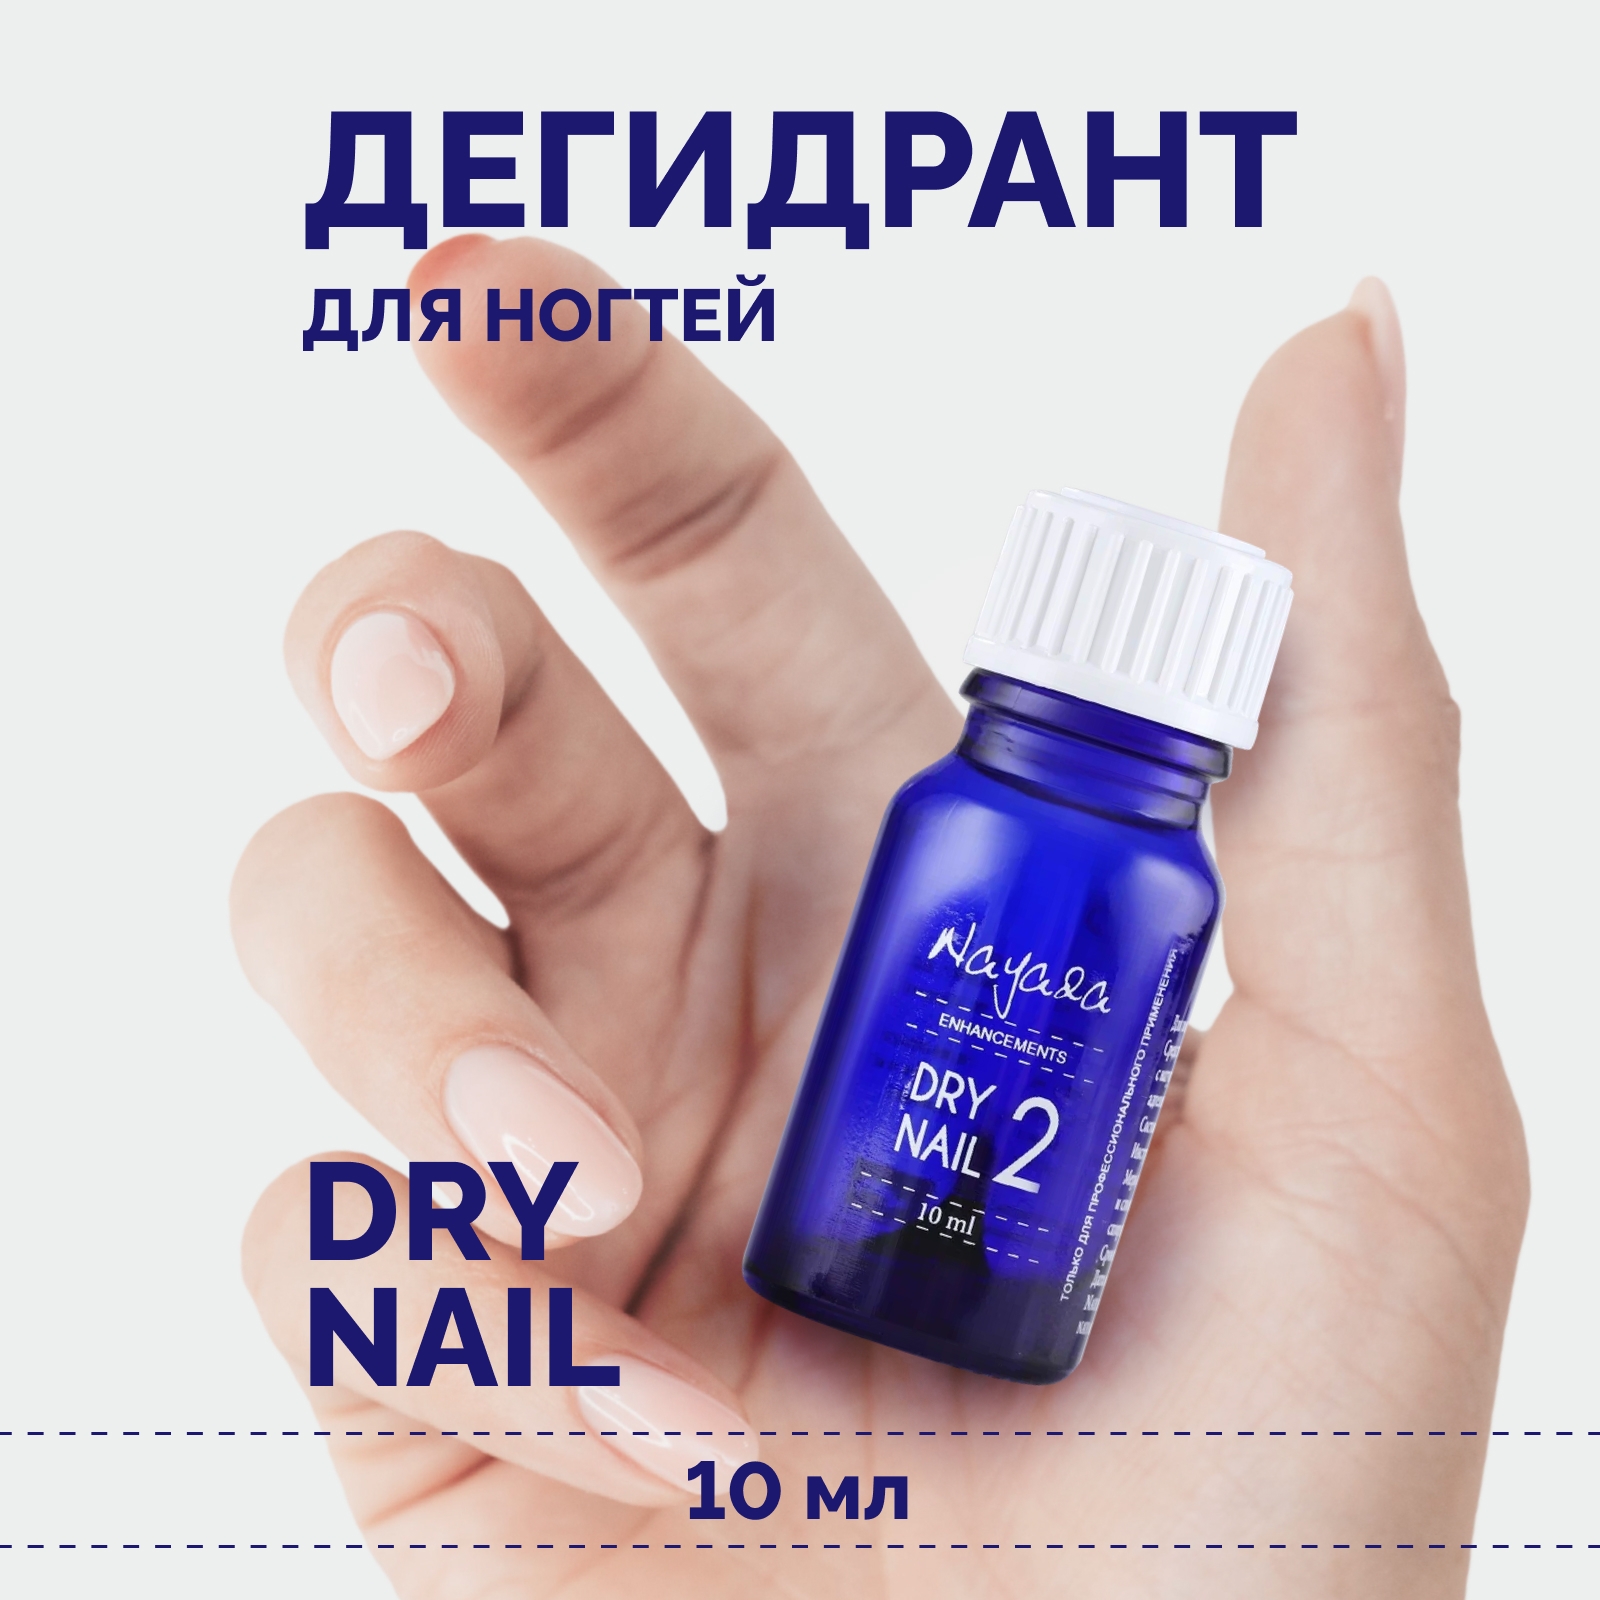 Дегидрант для ногтей Nayada Dry nail обезжириватель, 10 мл evi professional средство для обезжиривания ногтей снятия липкого слоя и дегидратации ногтей 3в1